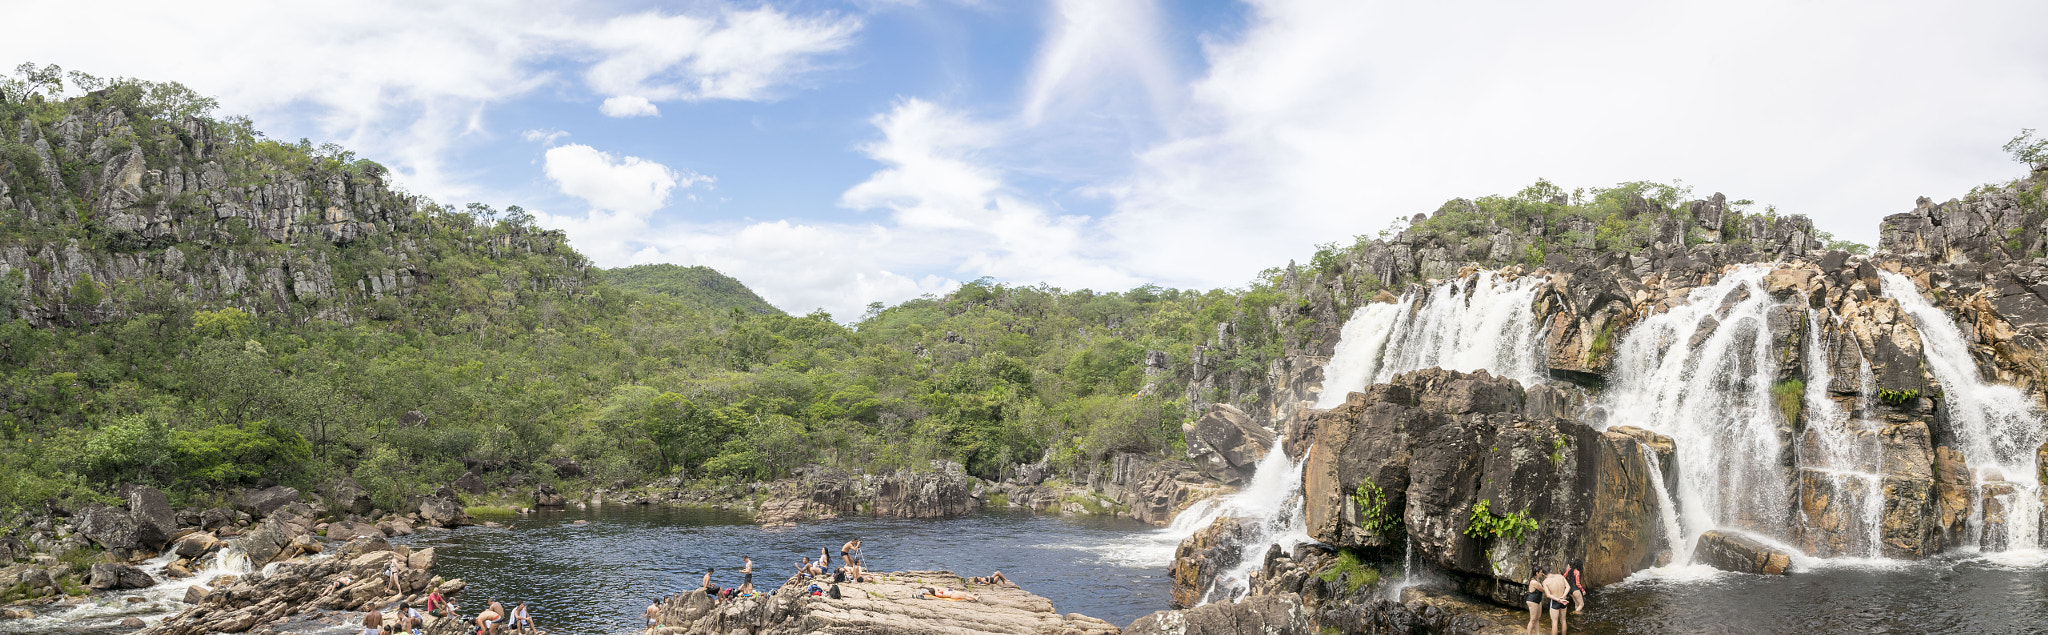 Nikon D3300 sample photo. Cachoeira da carioca - parque nacional da chapada dos veadeiros photography